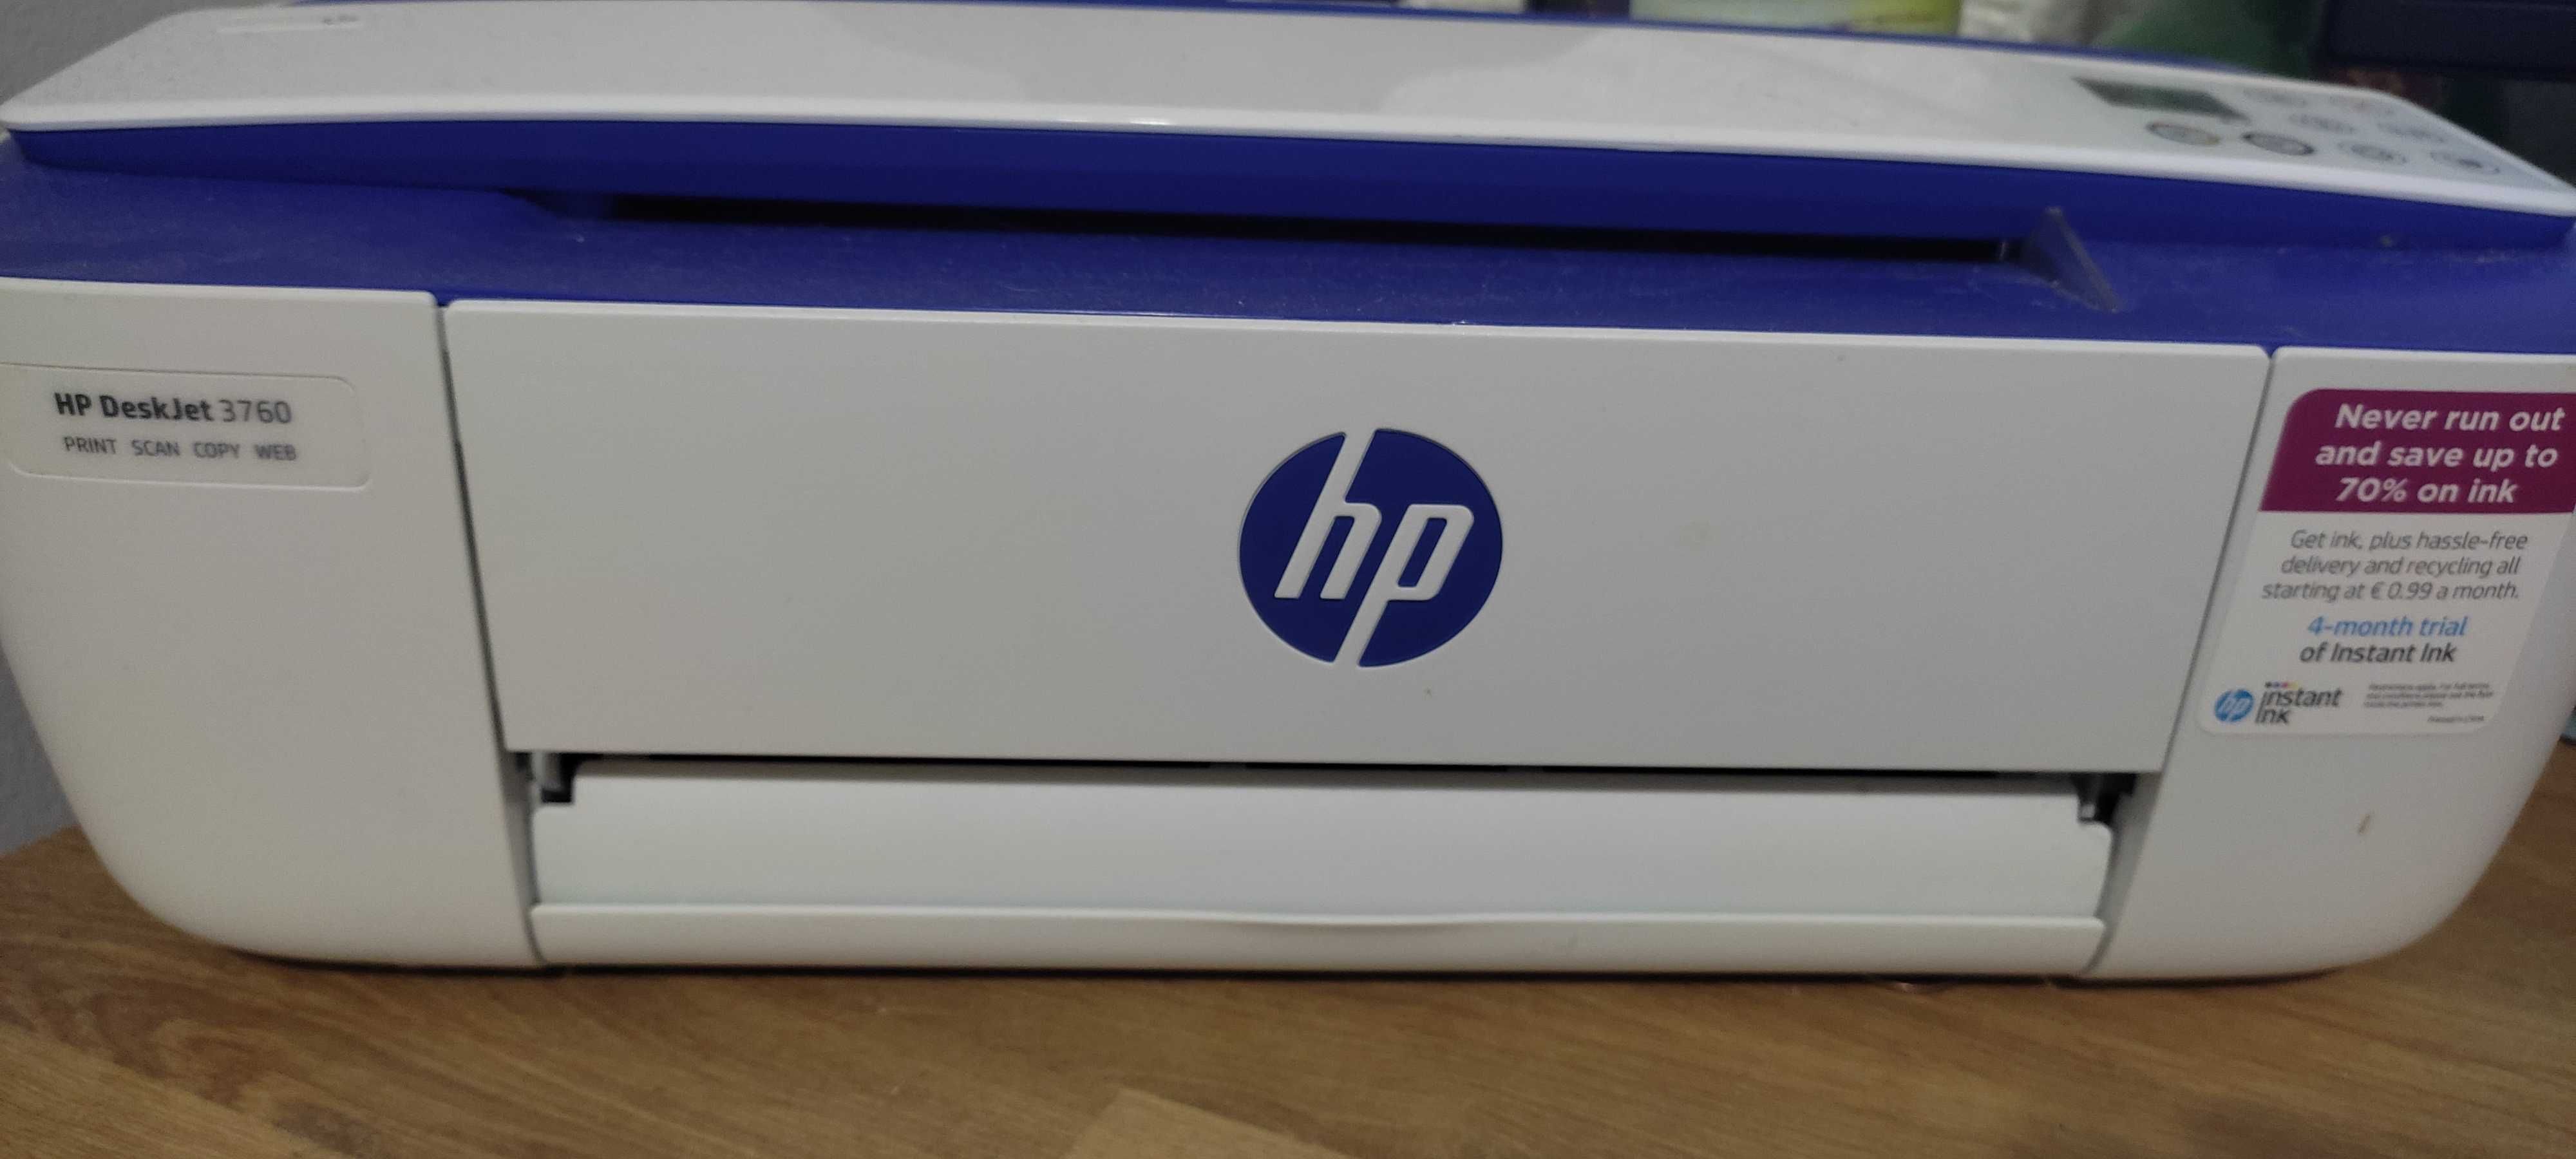 Multifunções HP DeskJet 3760 - Como Nova e Negociável